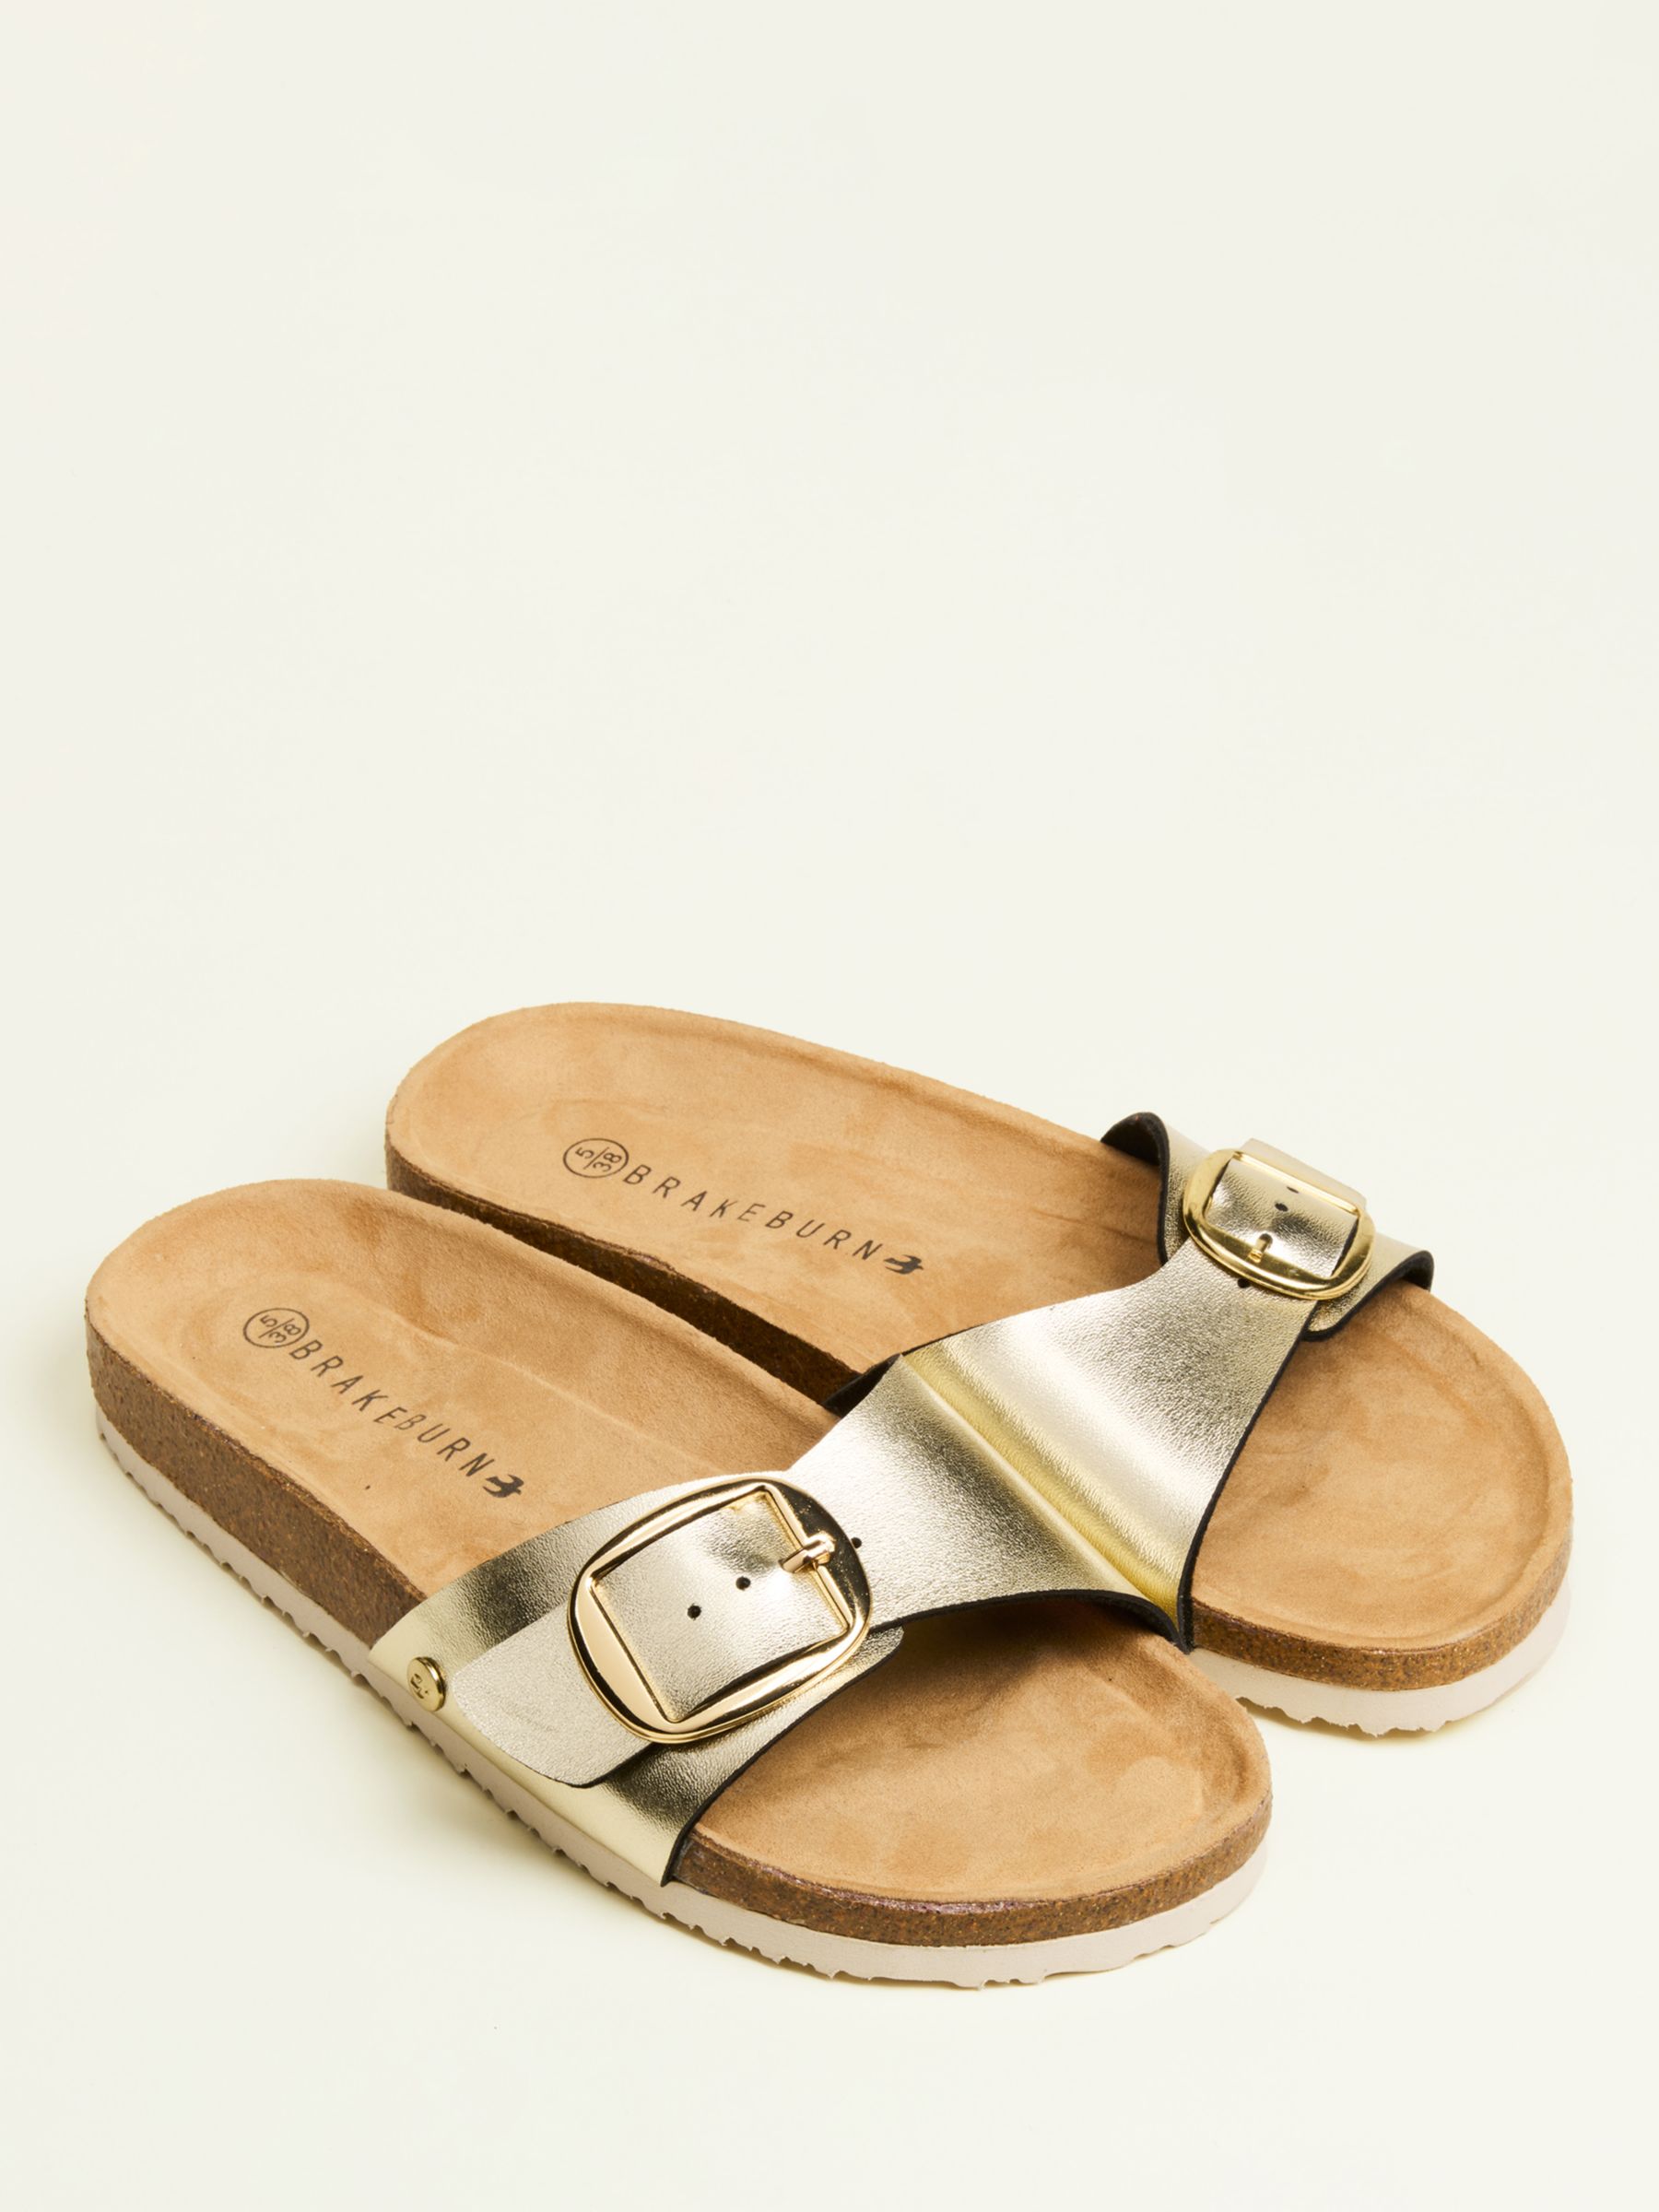 Buy Brakeburn Buckle Strap Sandals, Gold Online at johnlewis.com